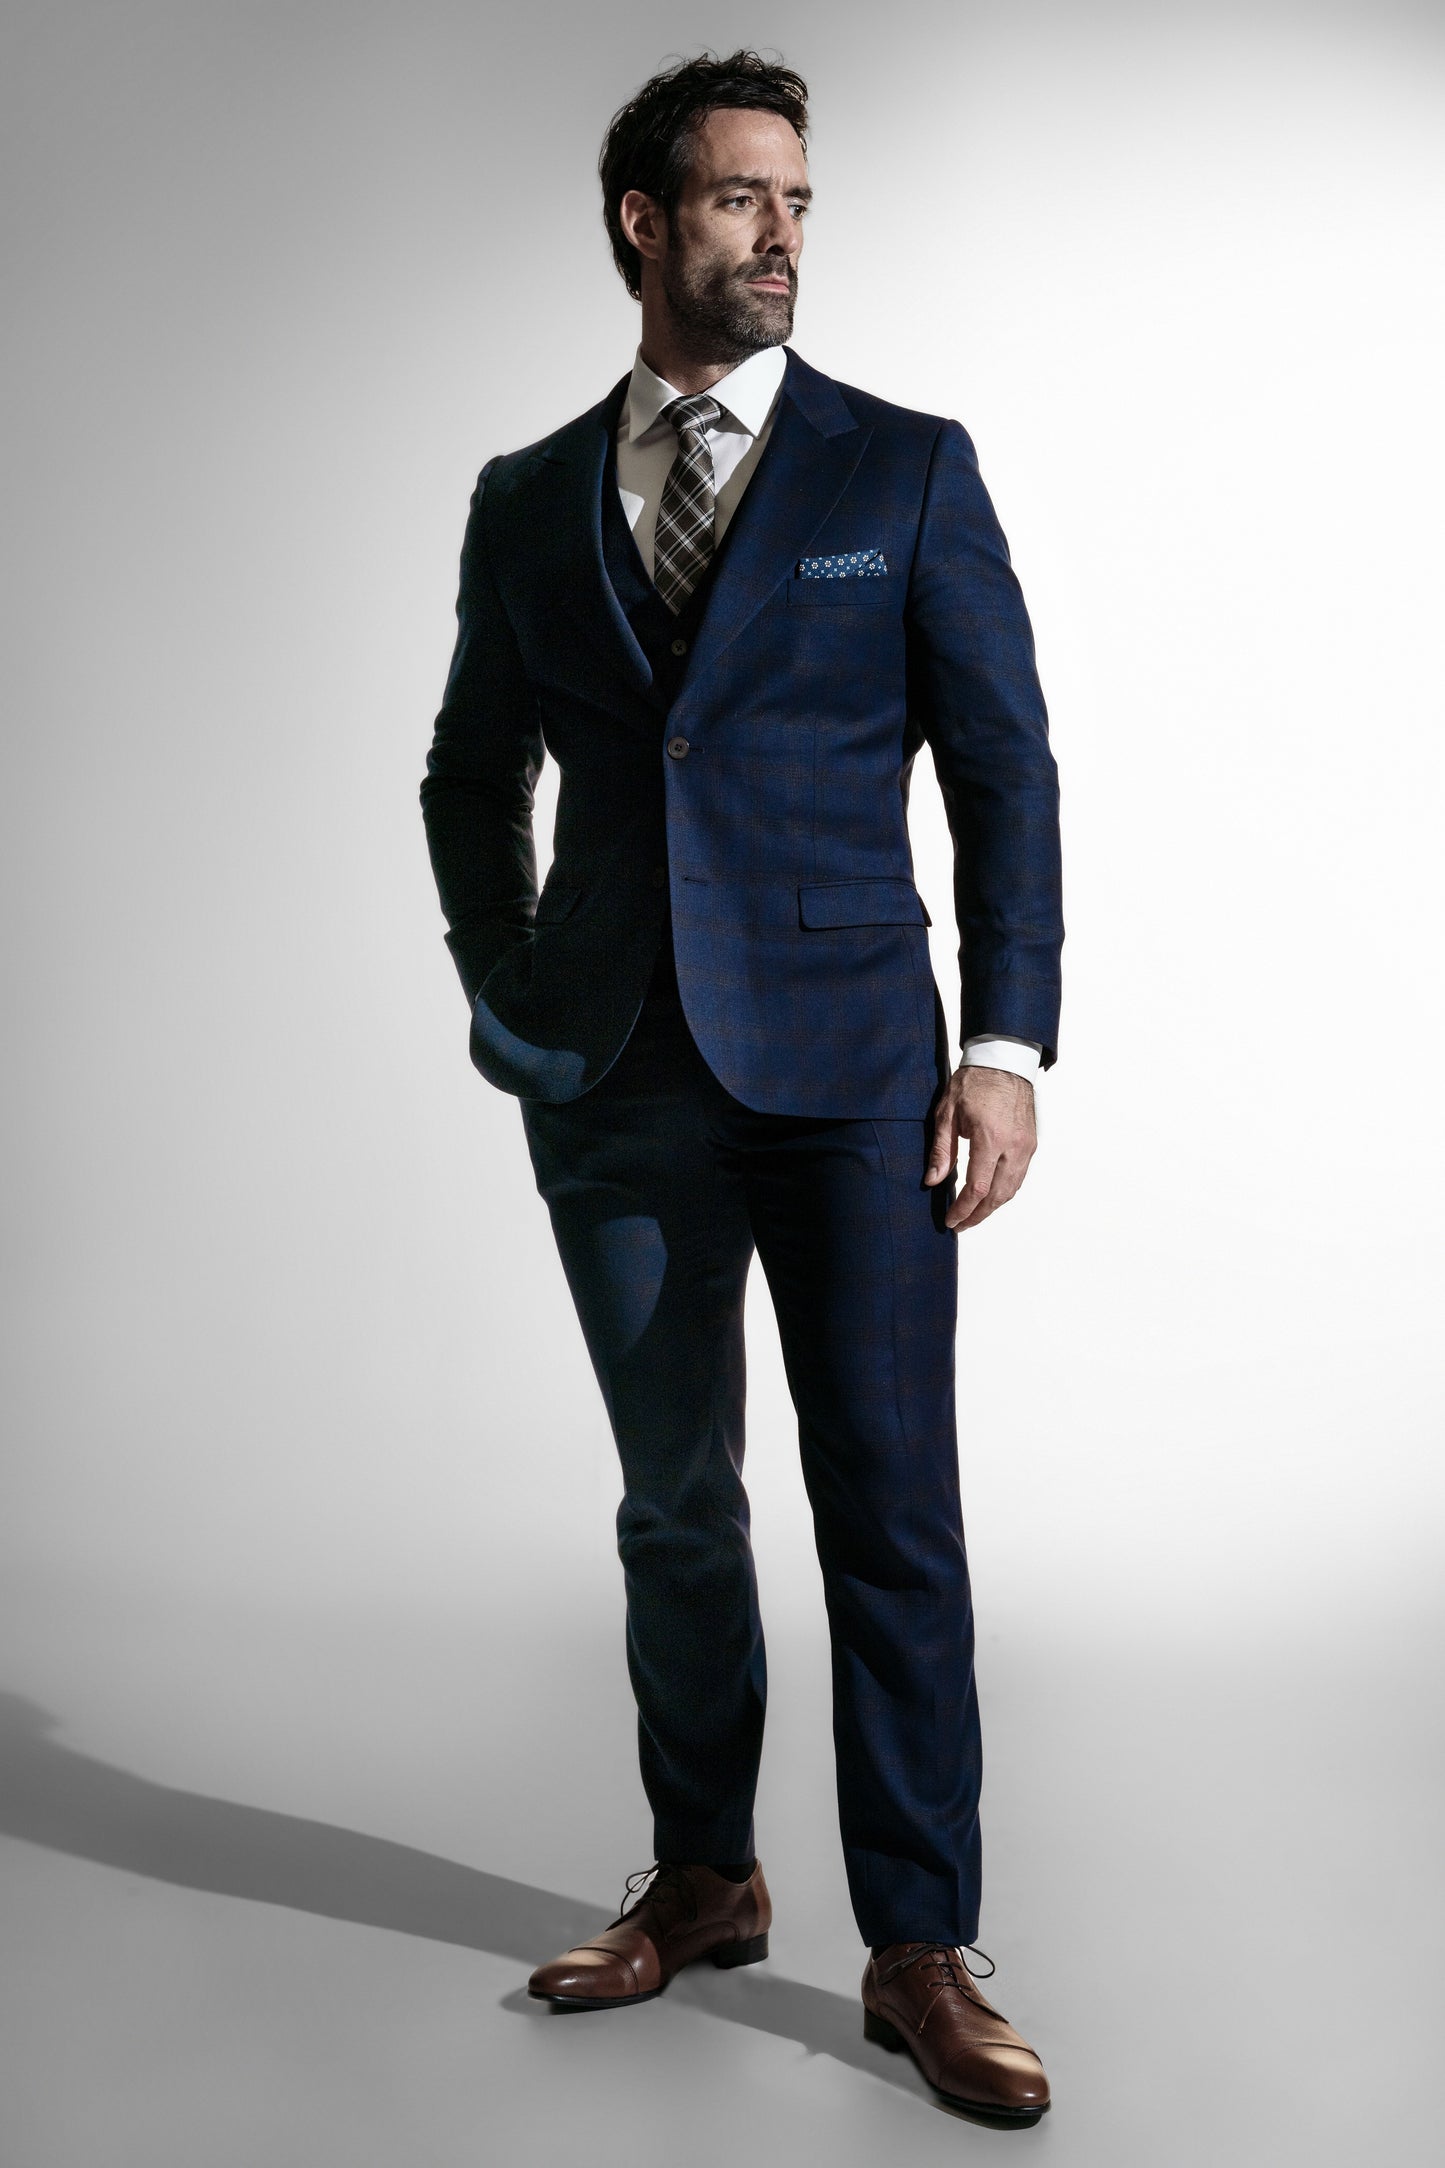 Stilfuld mand i en dybblå skræddersyet jakkesæk med sort slips og lommetørklæde, ser eftertænksom ud mod en hvid baggrund